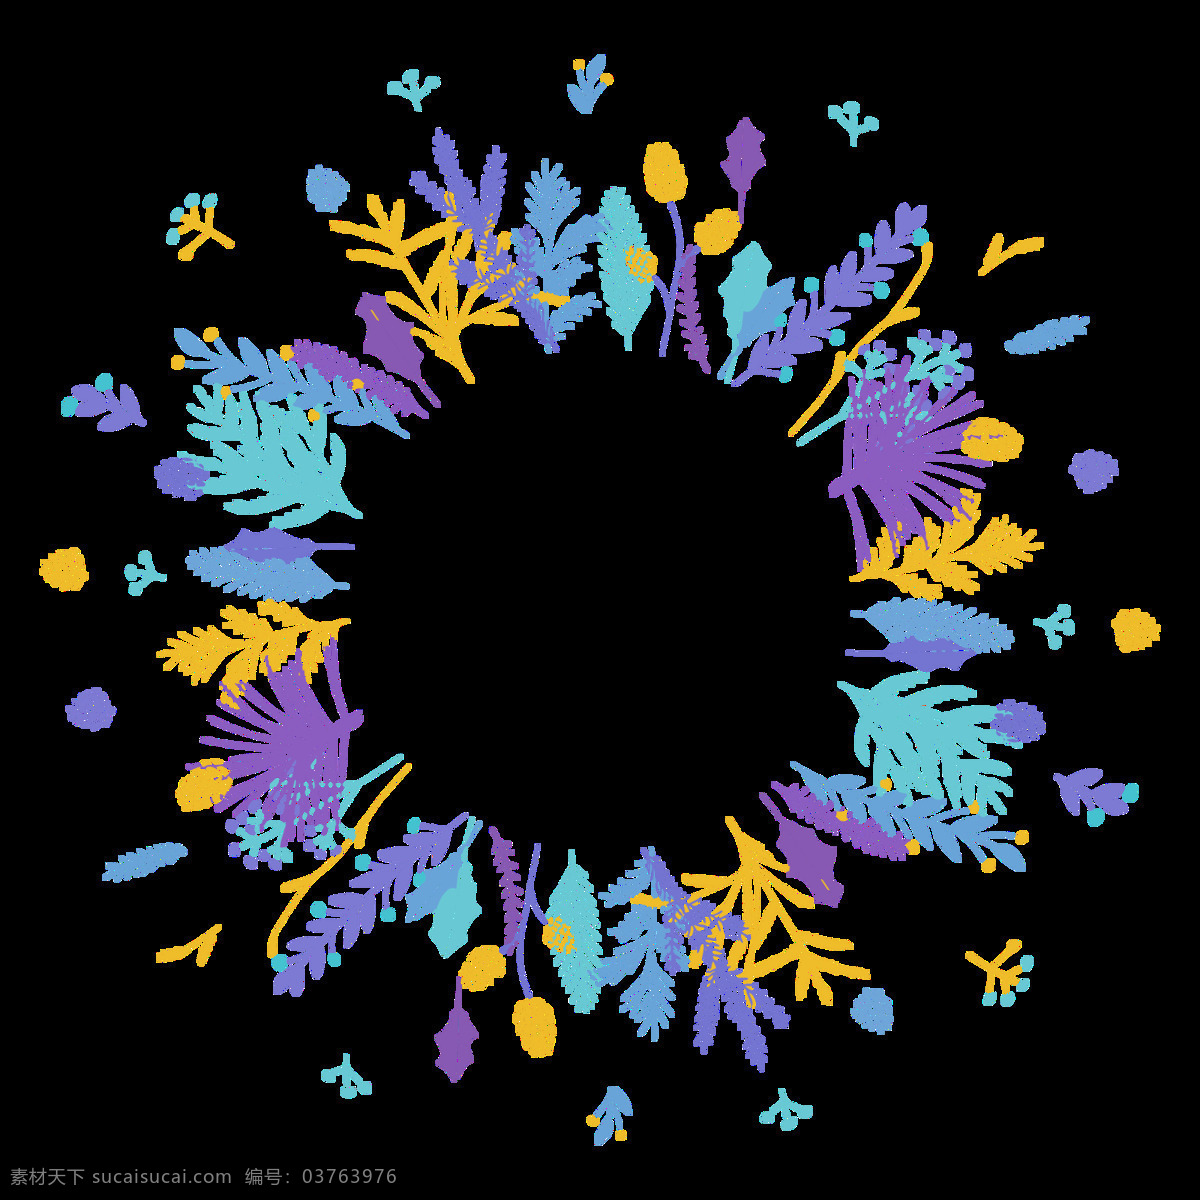 花环 手绘 素雅 雅致 圆形手绘 装饰元素 蓝 黄 紫 树叶 装饰 元素